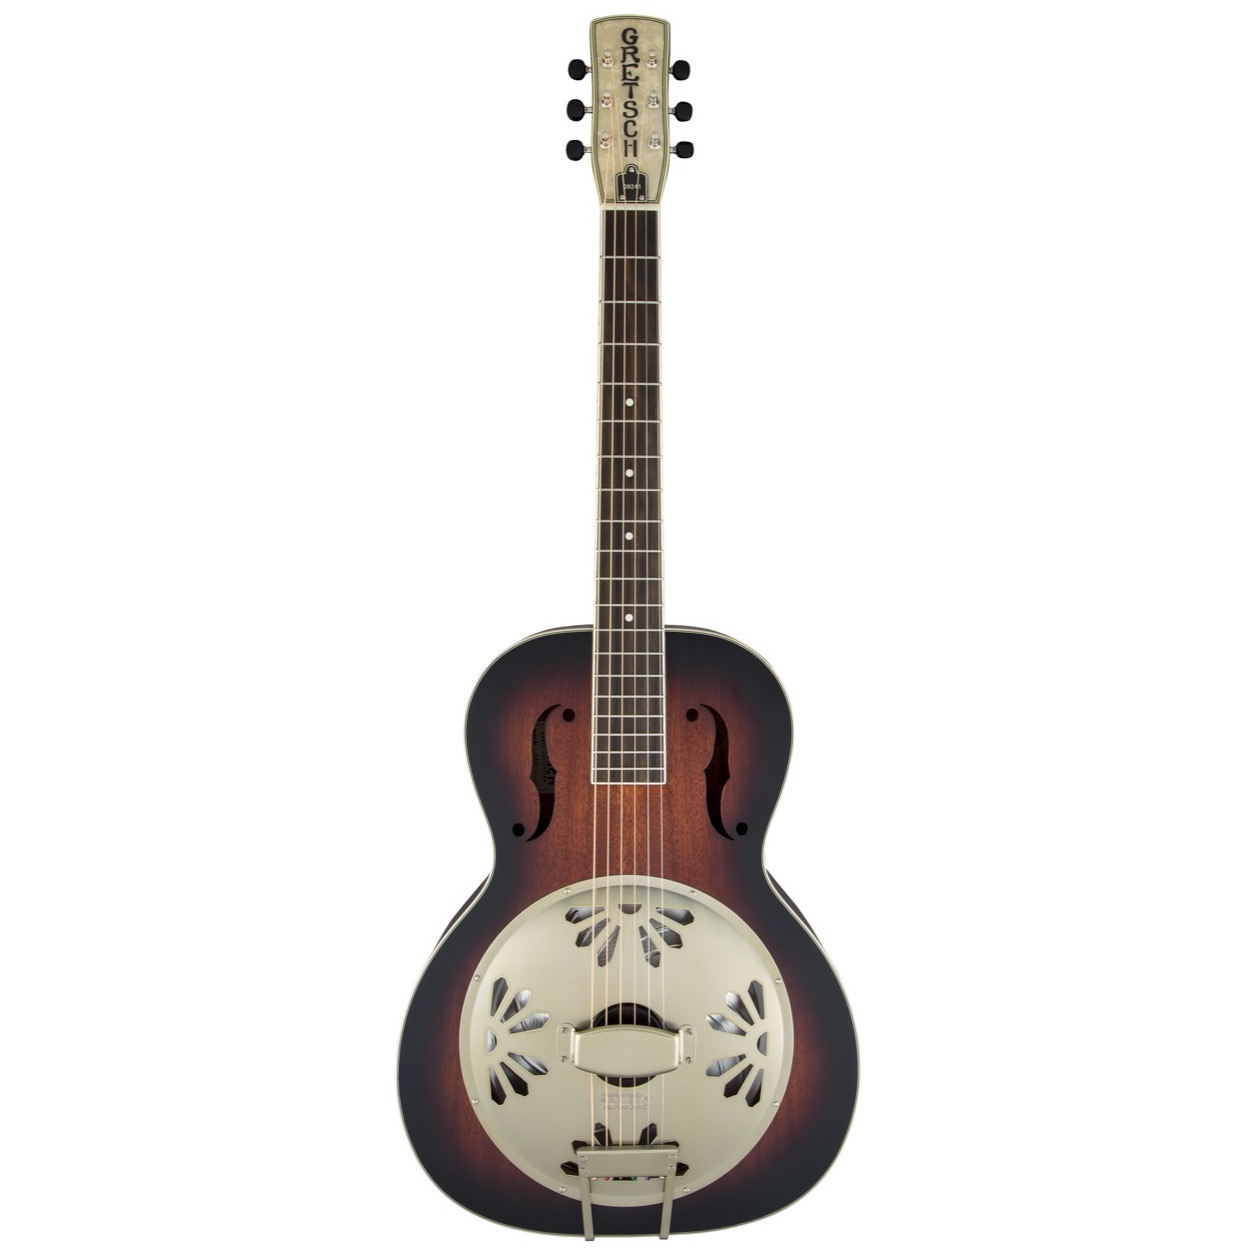 Gretsch G 9241 / G9241 Alligator Biscuit Round-Neck Resonator Guitar with Fishman® Nashville Pickup, 2-Color Sunburst